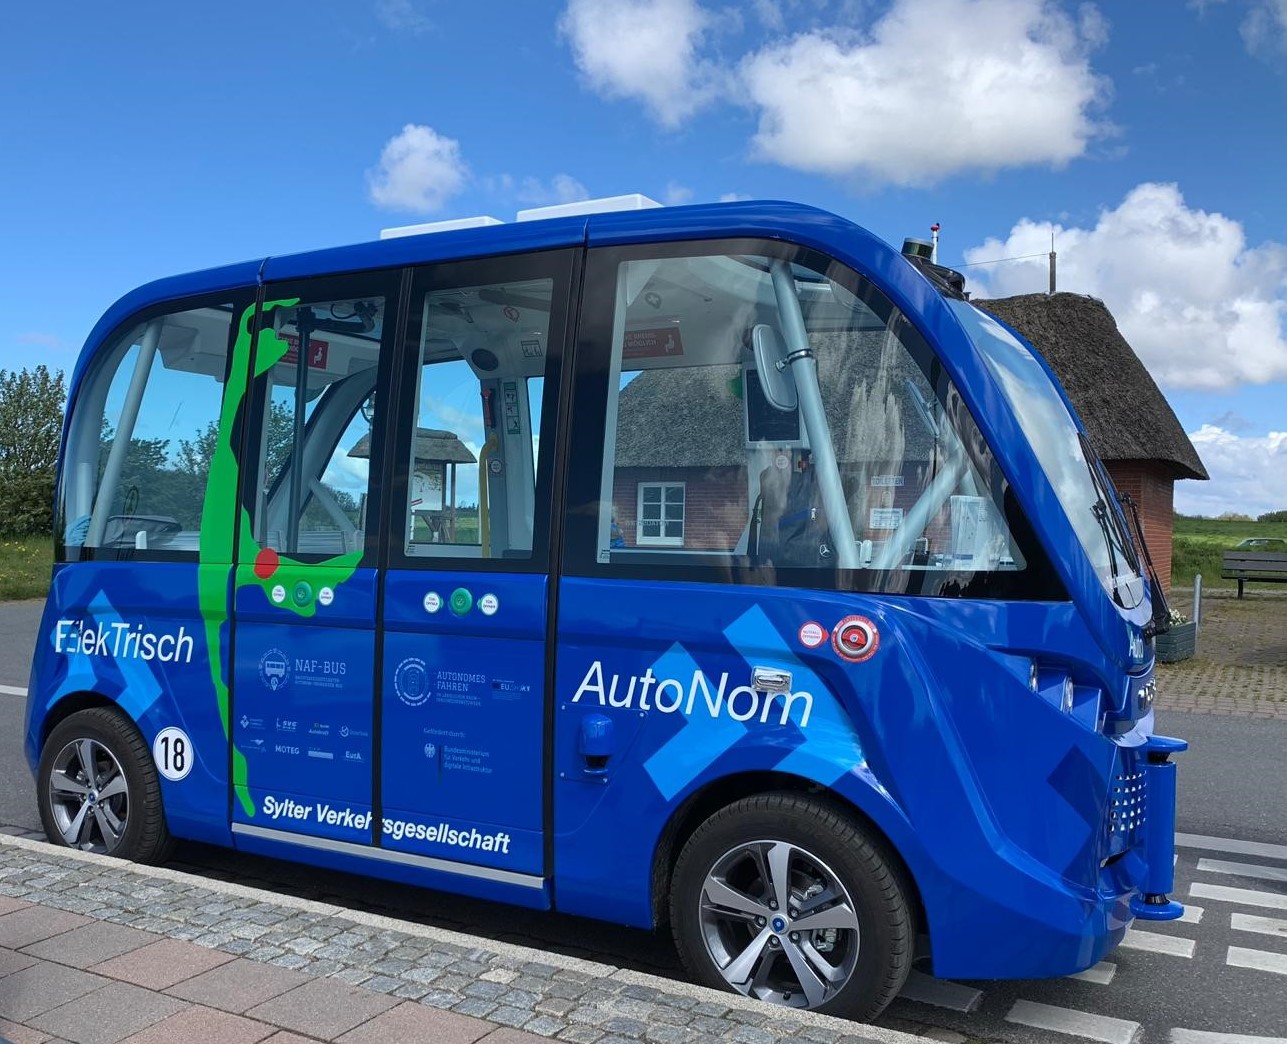 Development of public transport service with autonomous vehicles